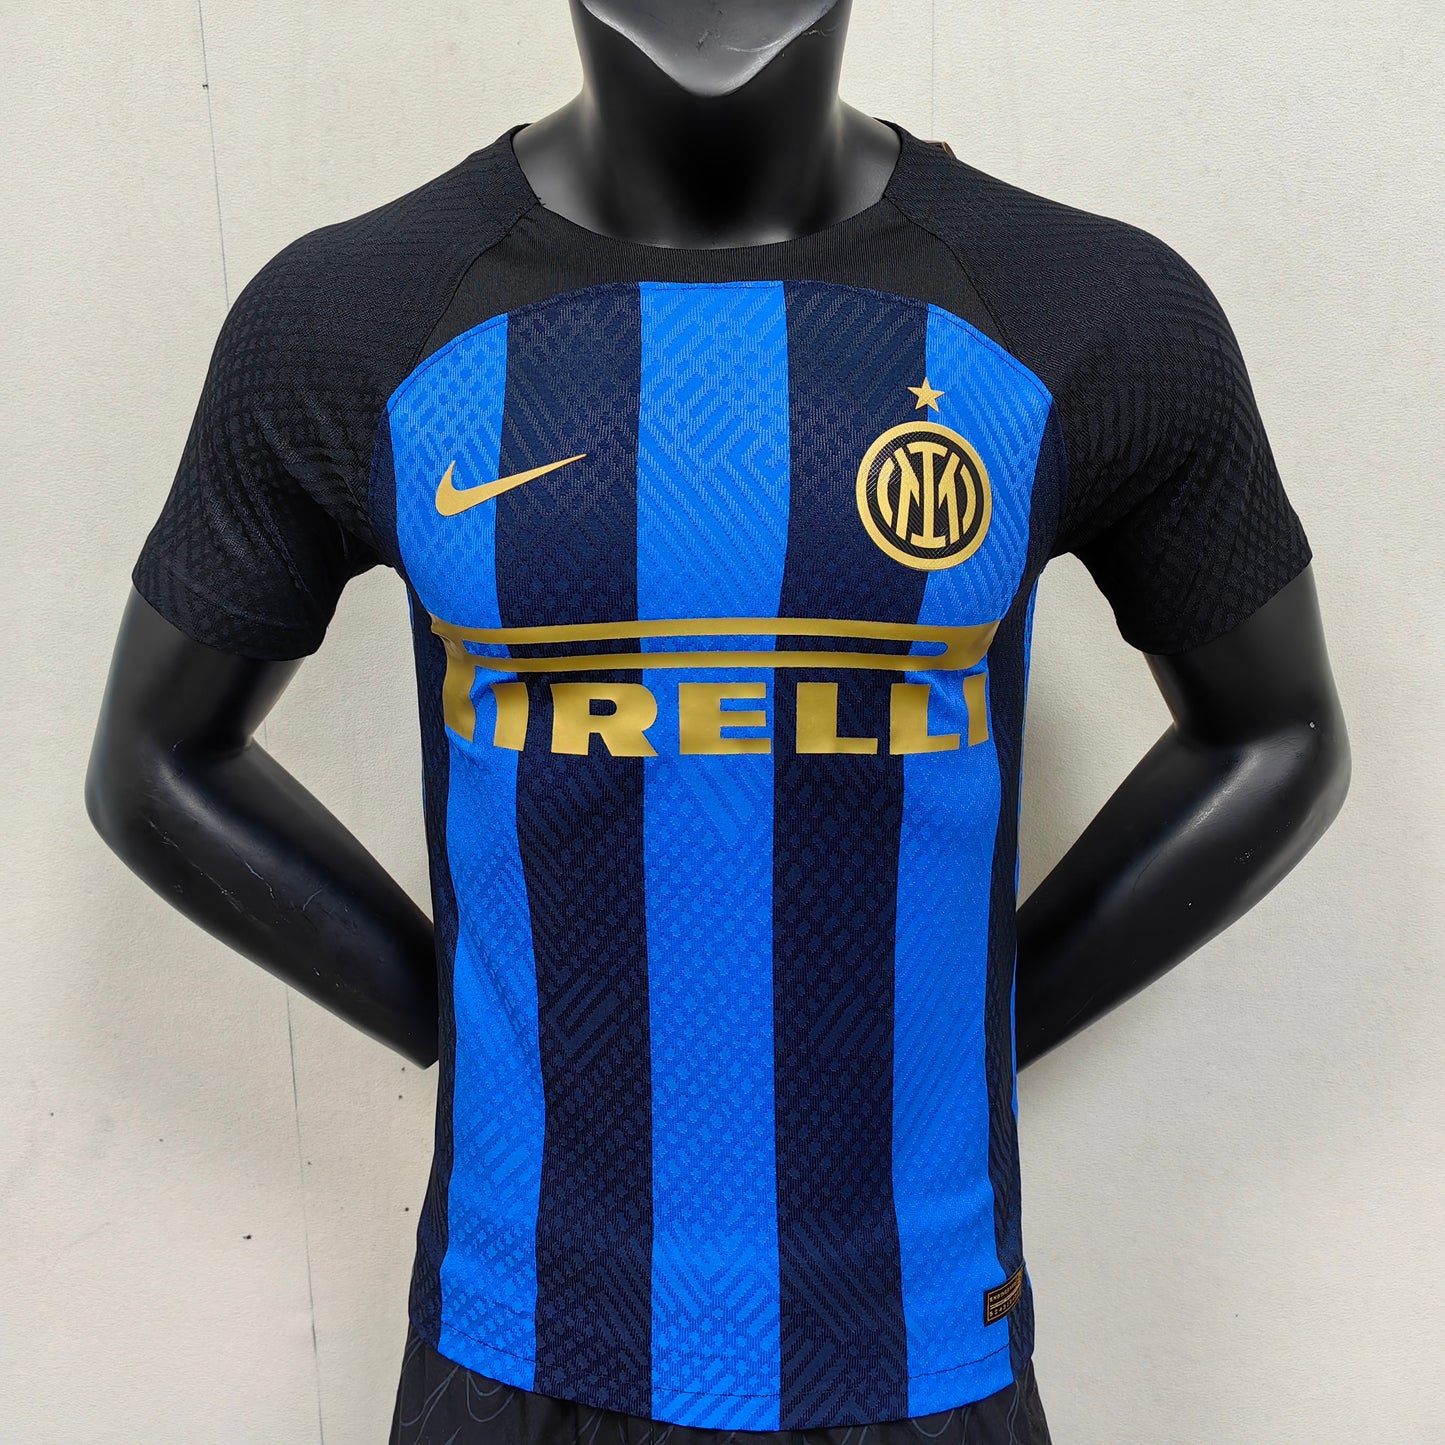 Inter Milan 22/23 player version